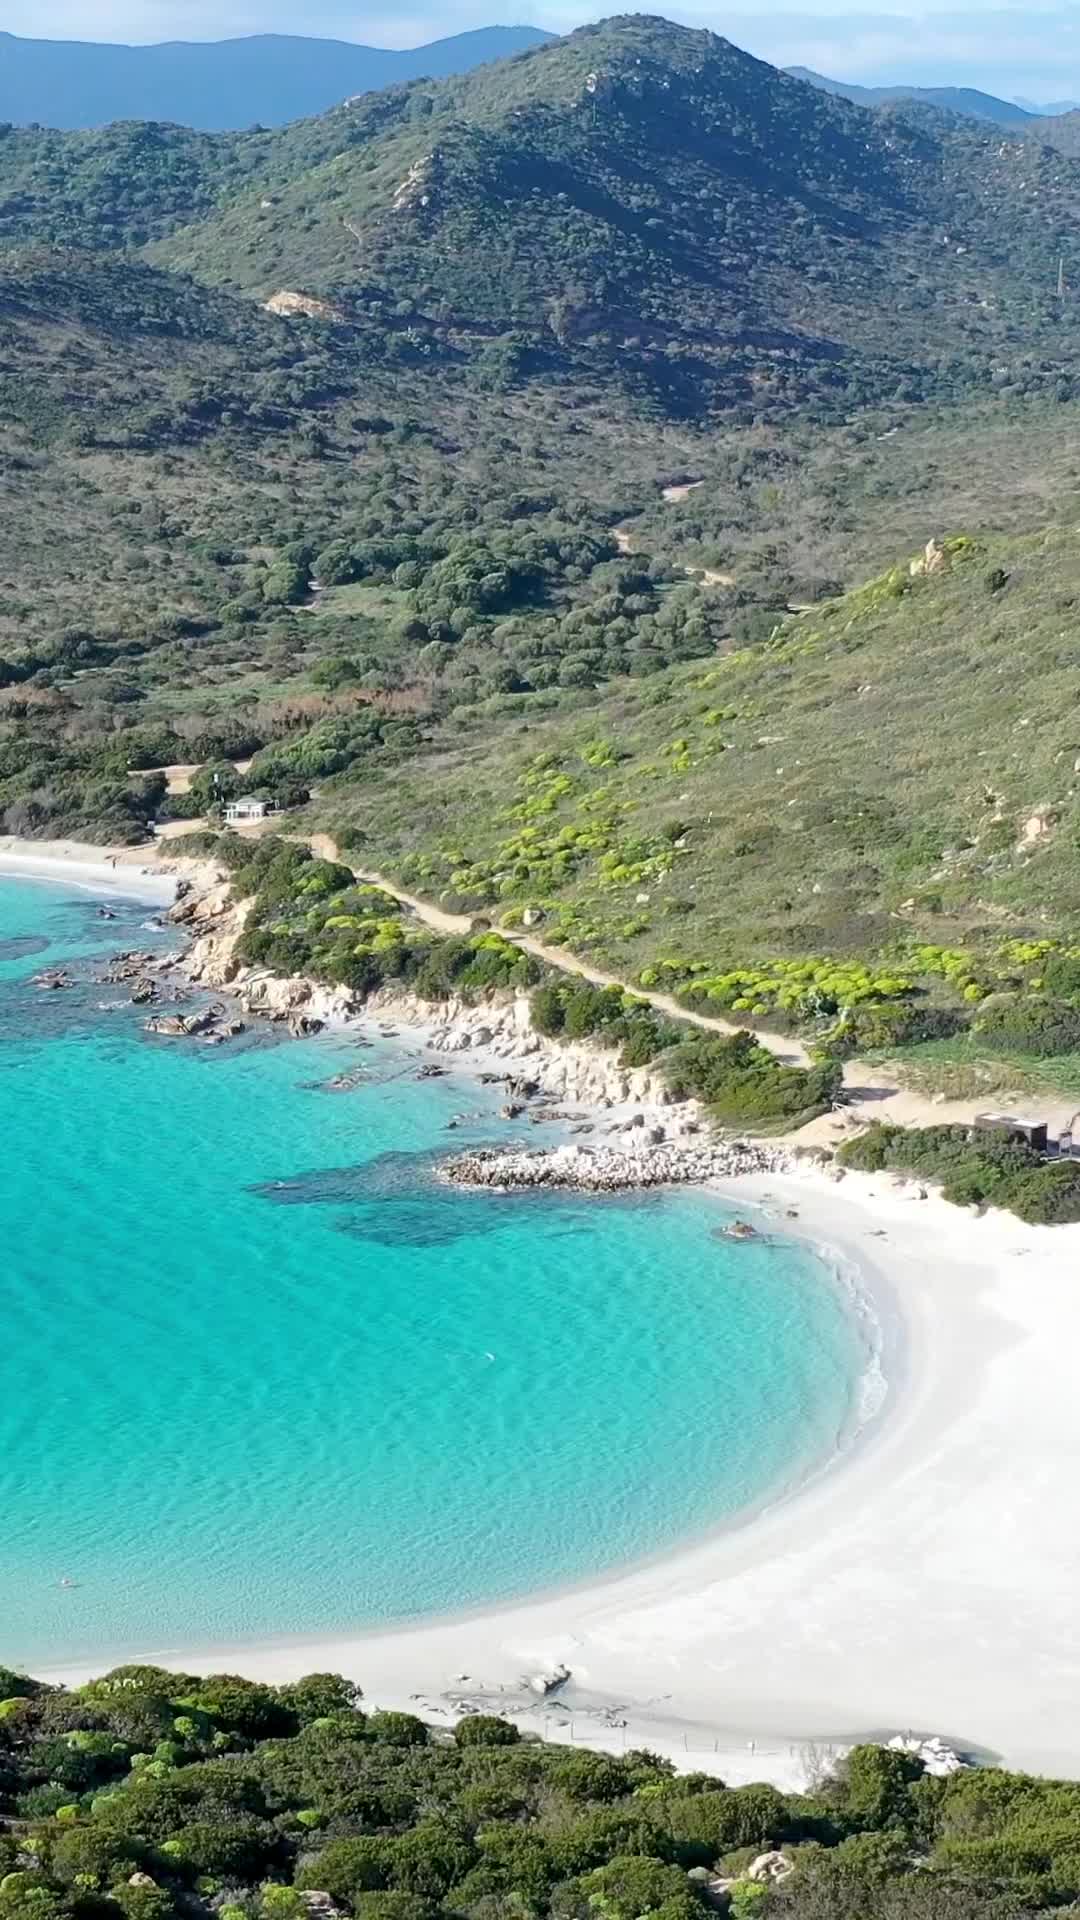 Punta Molentis, Villasimius: Sardinia's Hidden Gem